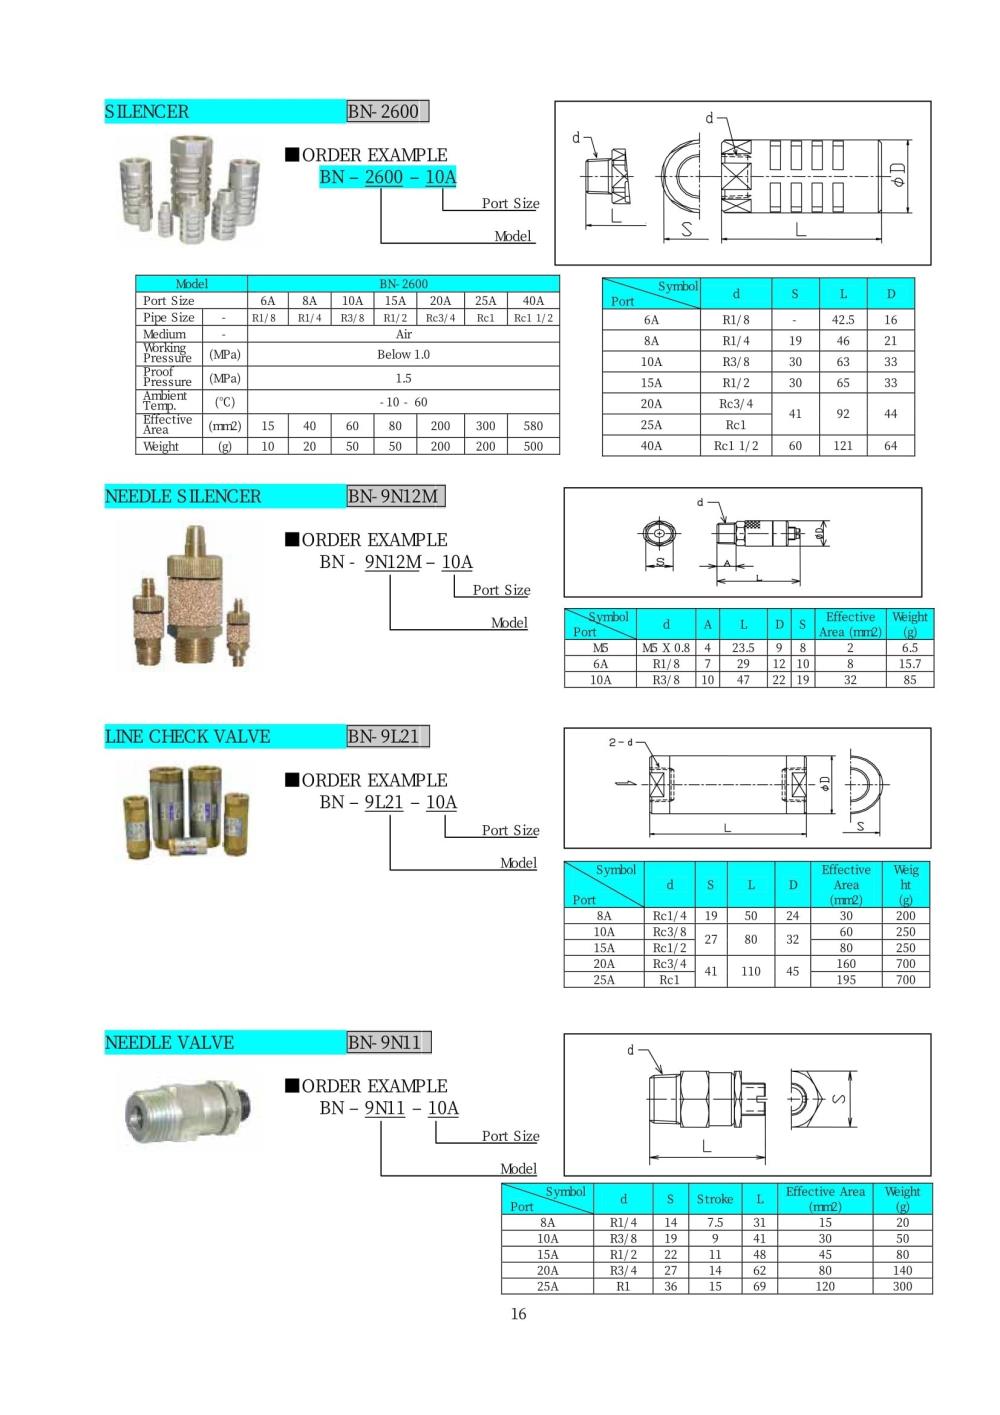 NIHON SEIKI Needle Valve BN-9N11 Series